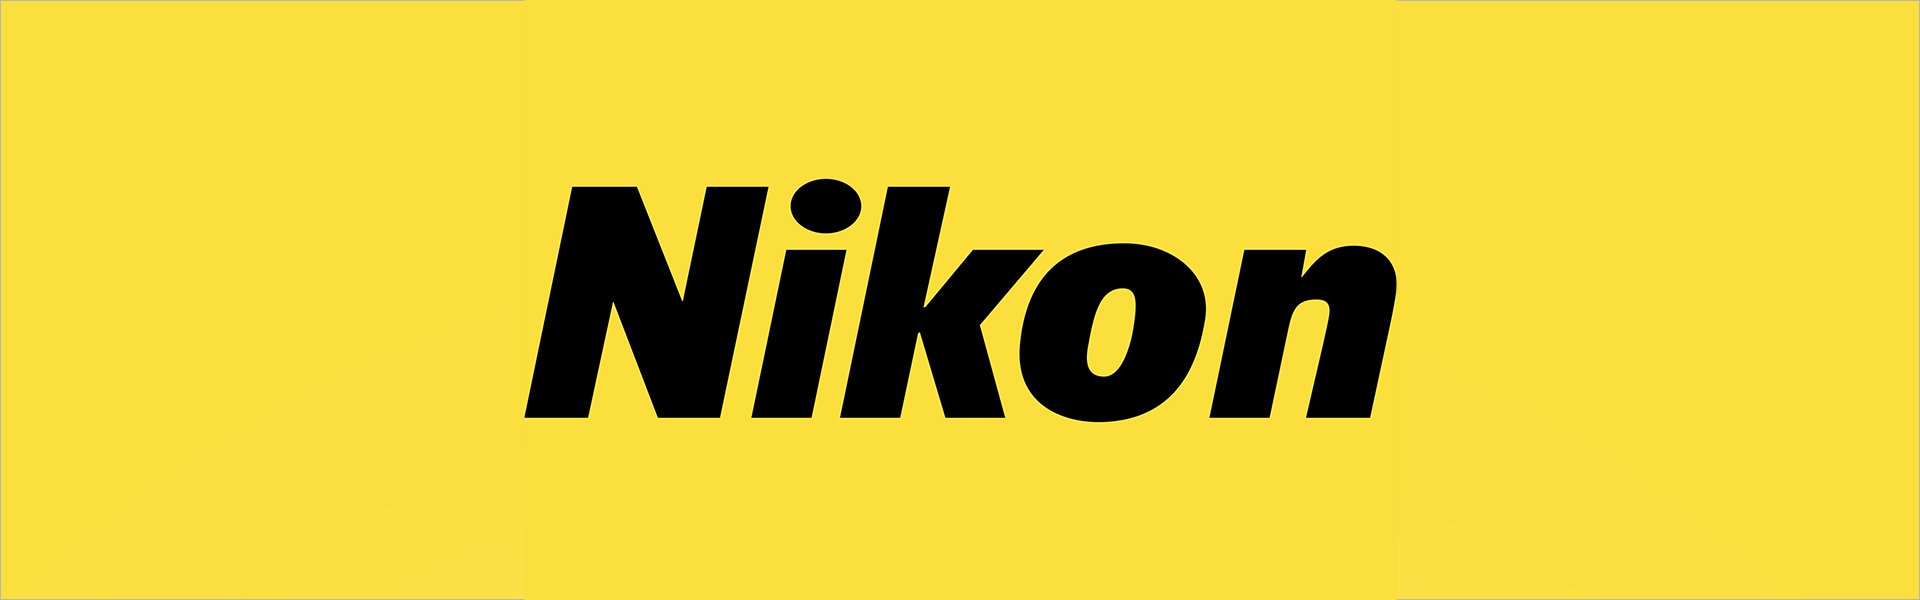 Nikon Z50 + Nikkor Z DX 18-140mm f/3.5-6.3 VR + FTZ II Adapter 